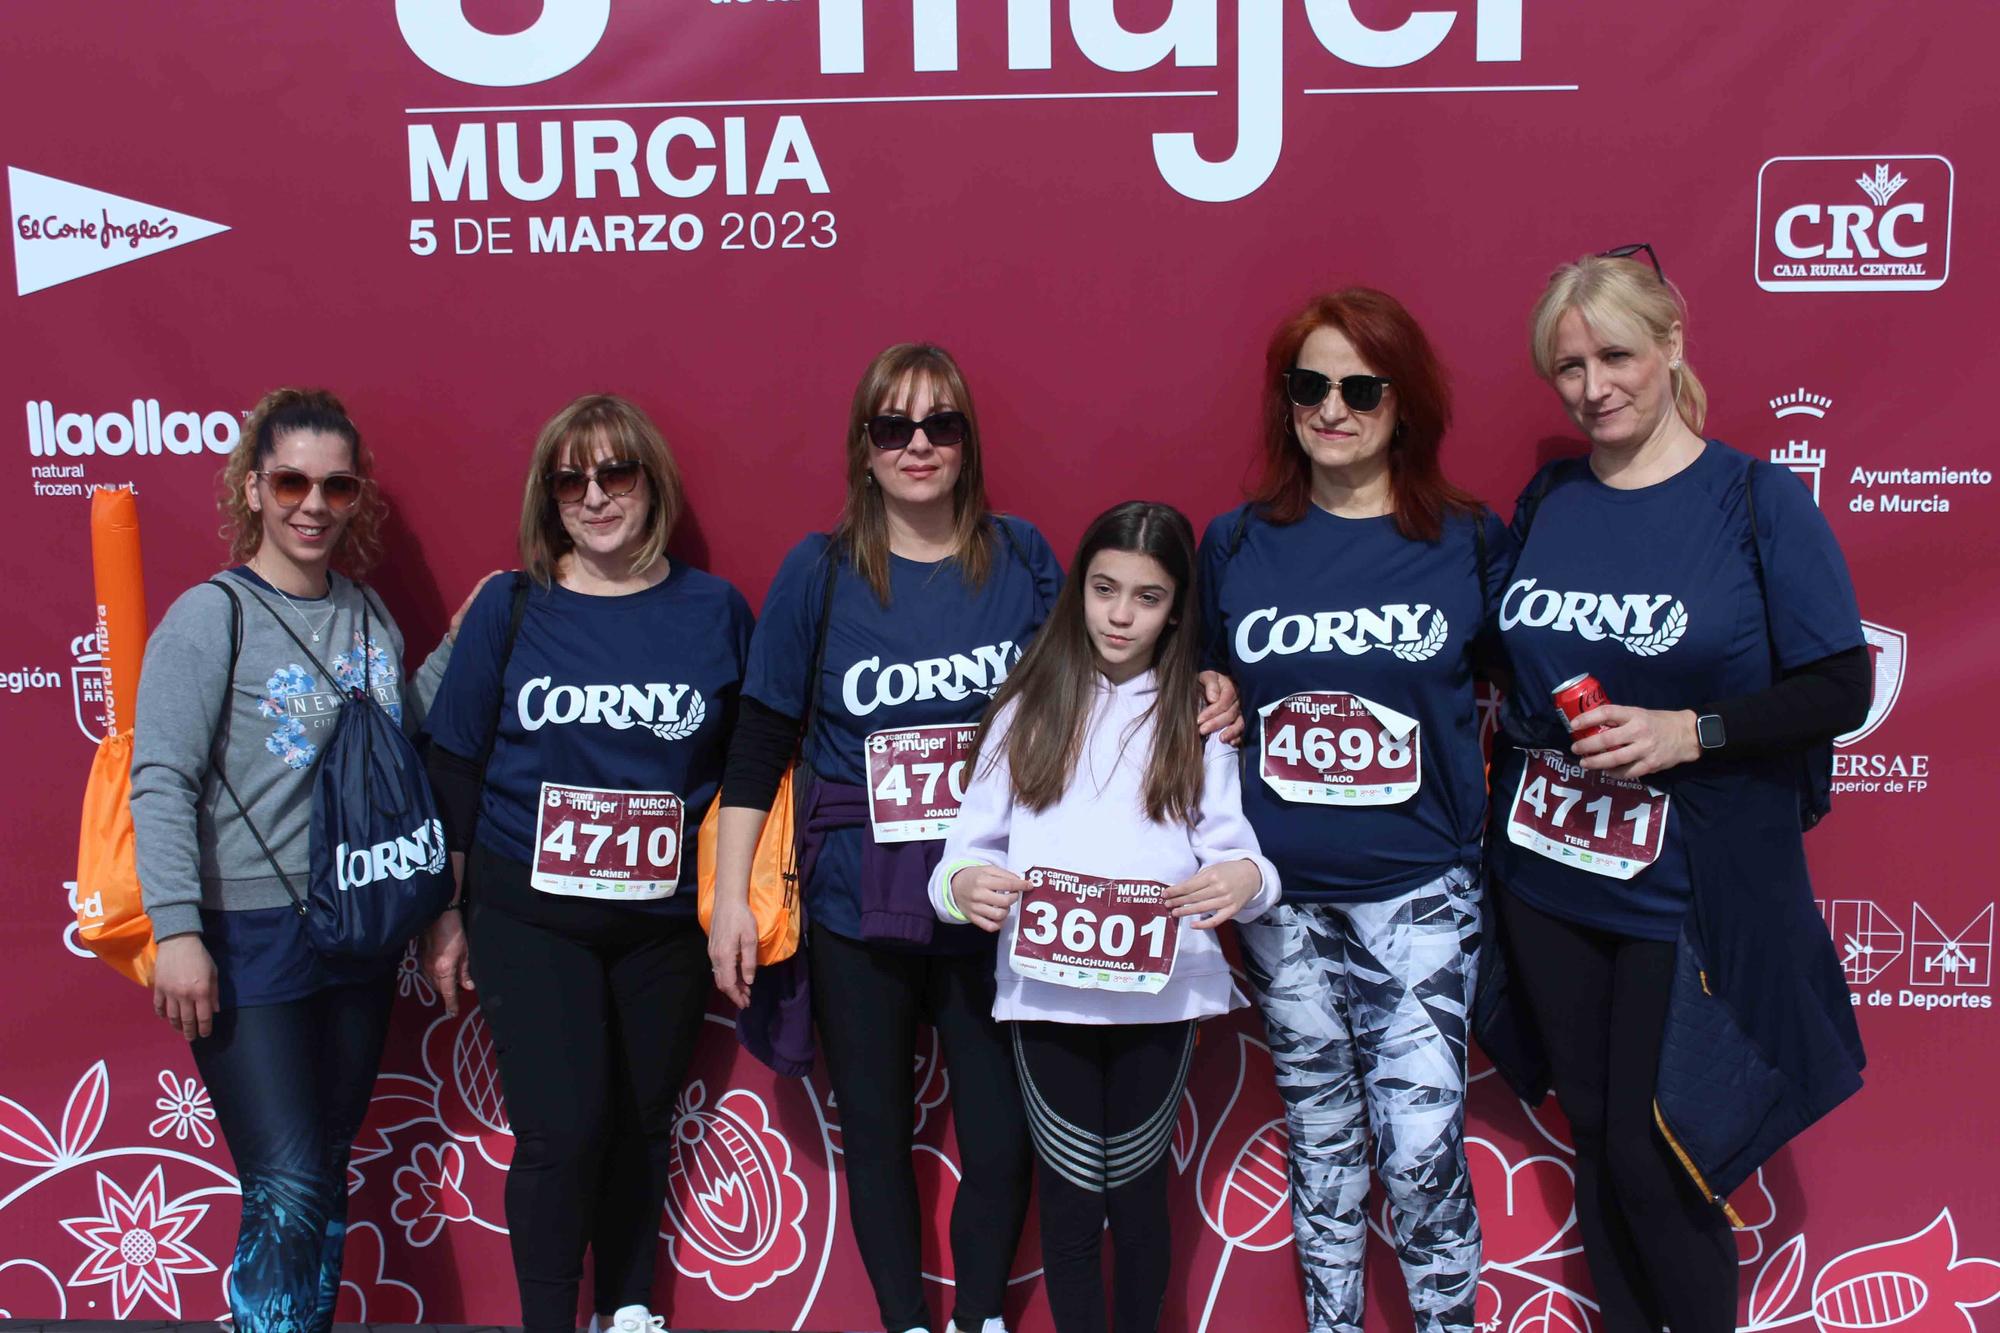 Carrera de la Mujer Murcia 2023: Photocall (4)